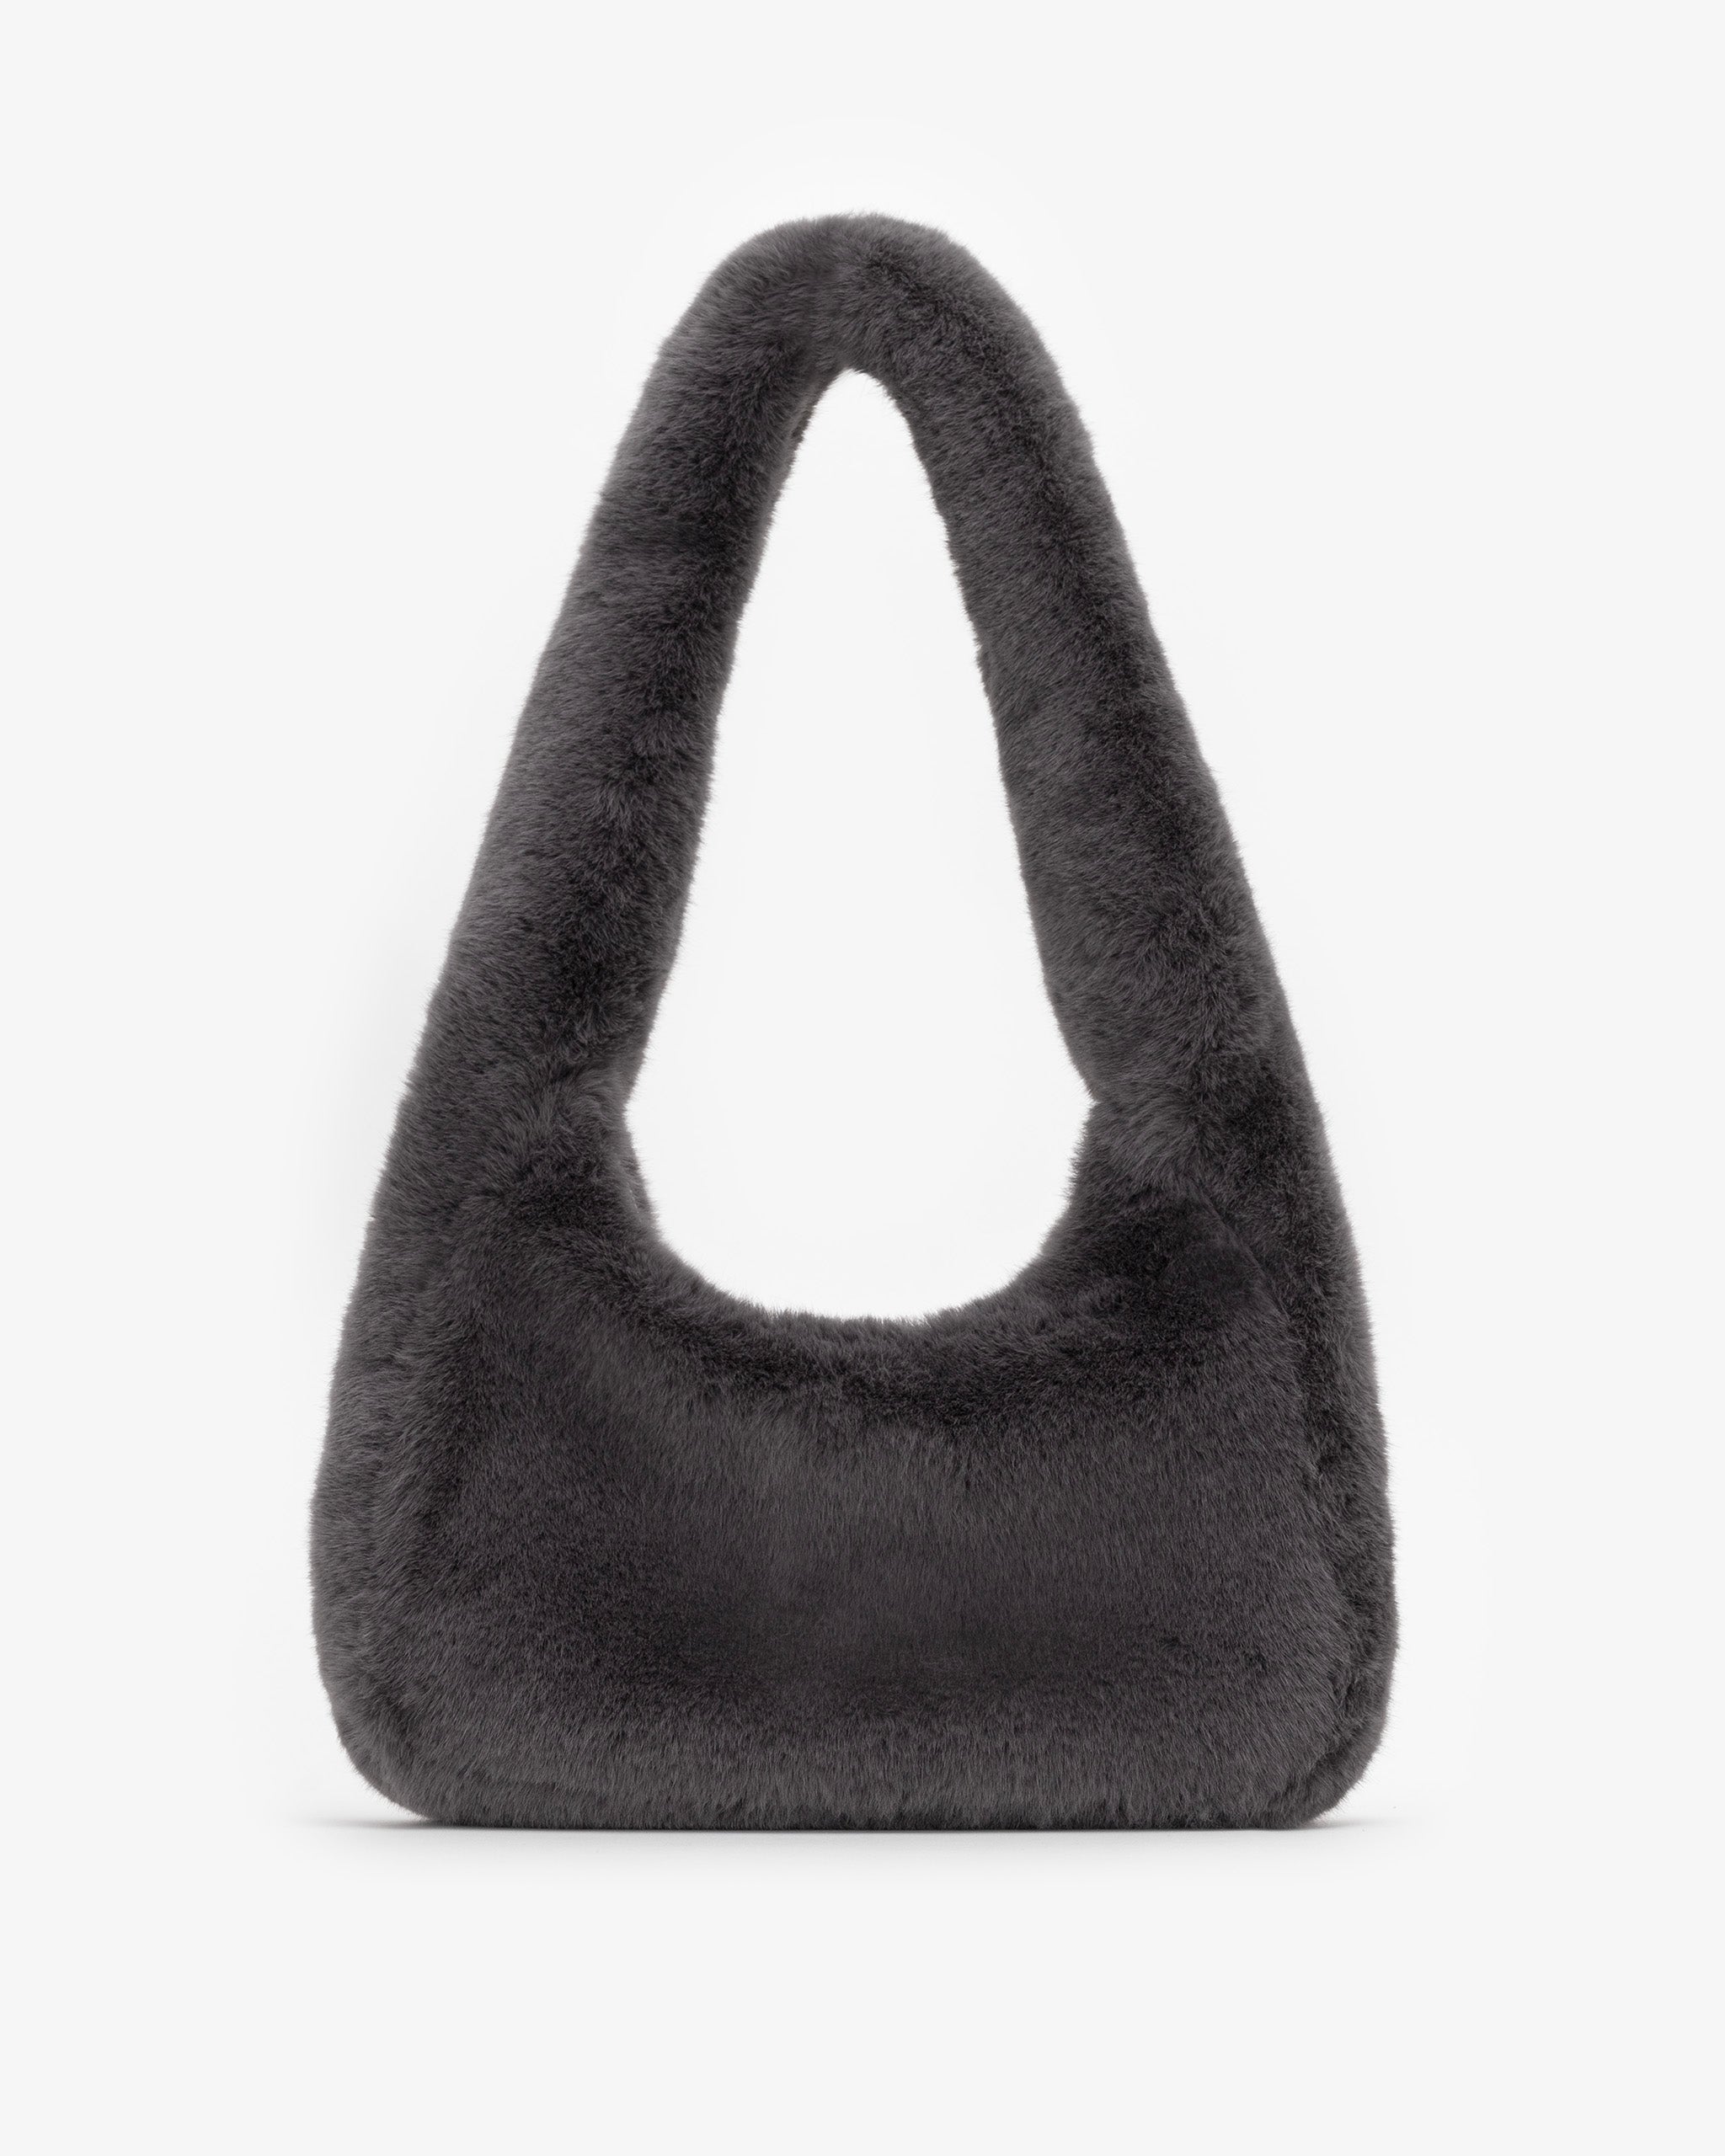 Soft Shoulder Bag in Graphite Grey Fur